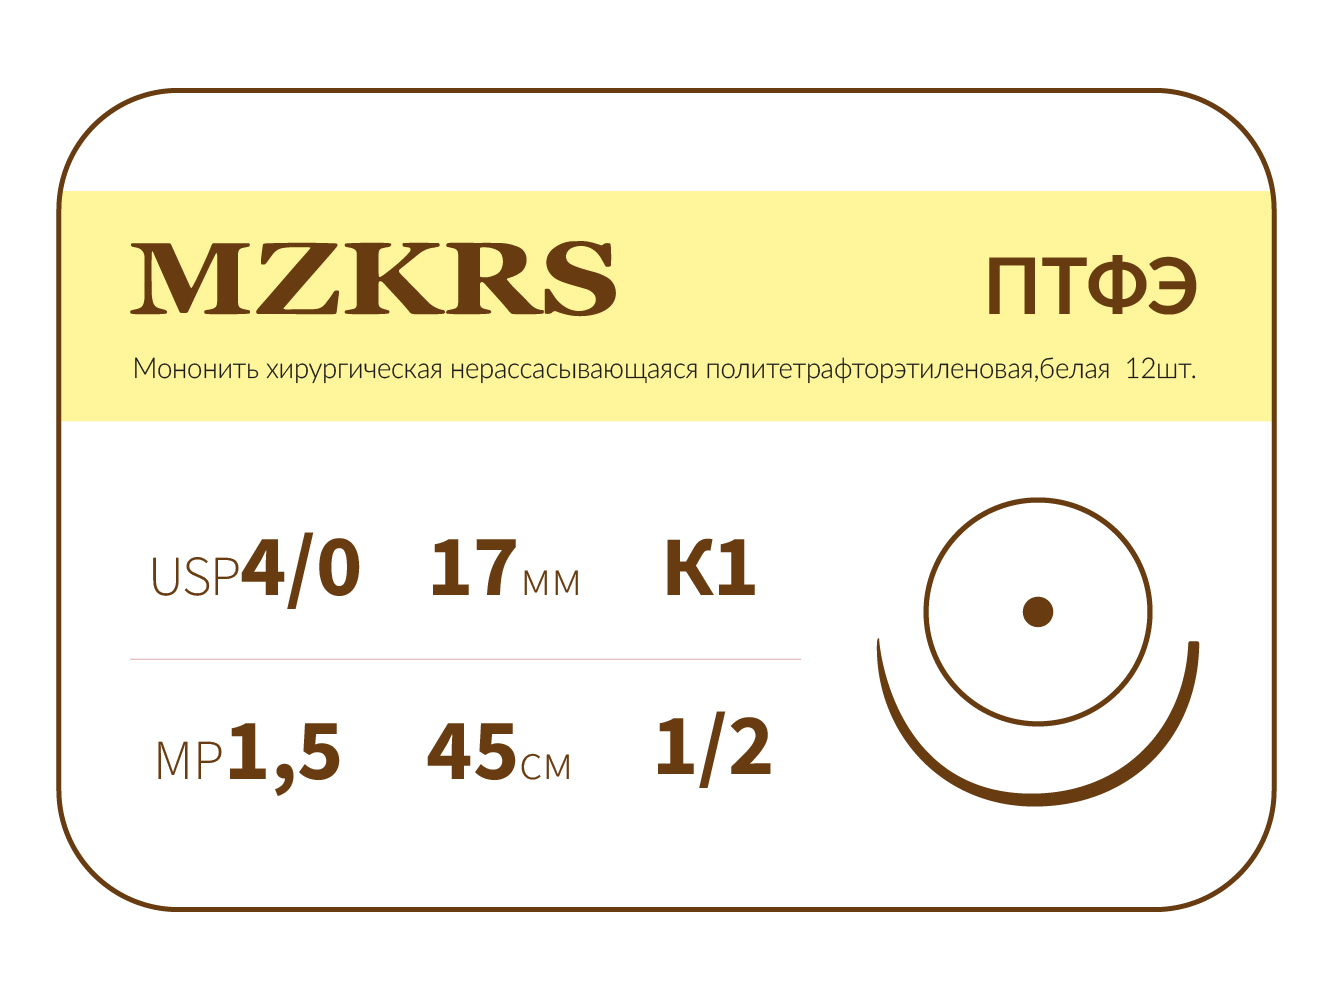 1712К1-Premium 4/0 (1.5) 45 ПТФЭ хирургическая нить политетрафторэтиленовая, MZKRS (Россия)